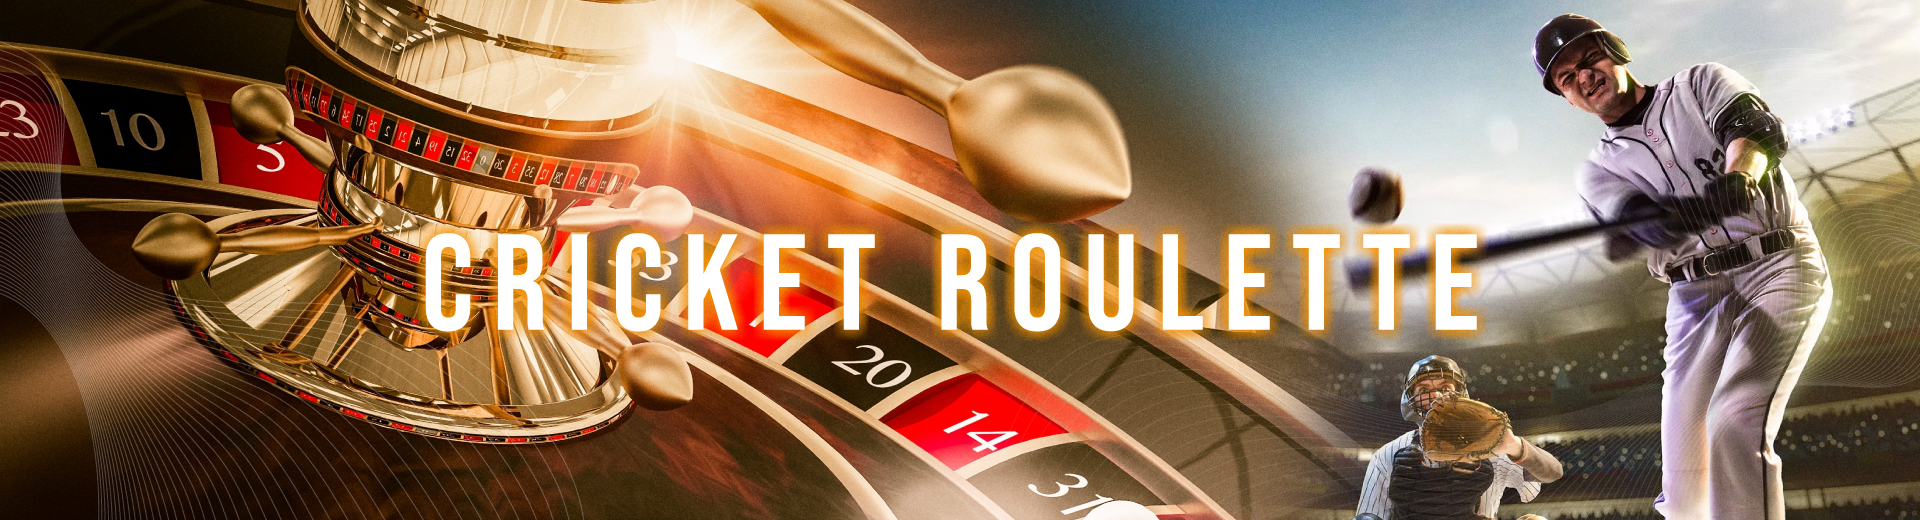 Cricket Roulette in OKBET Casino App - OKBET app